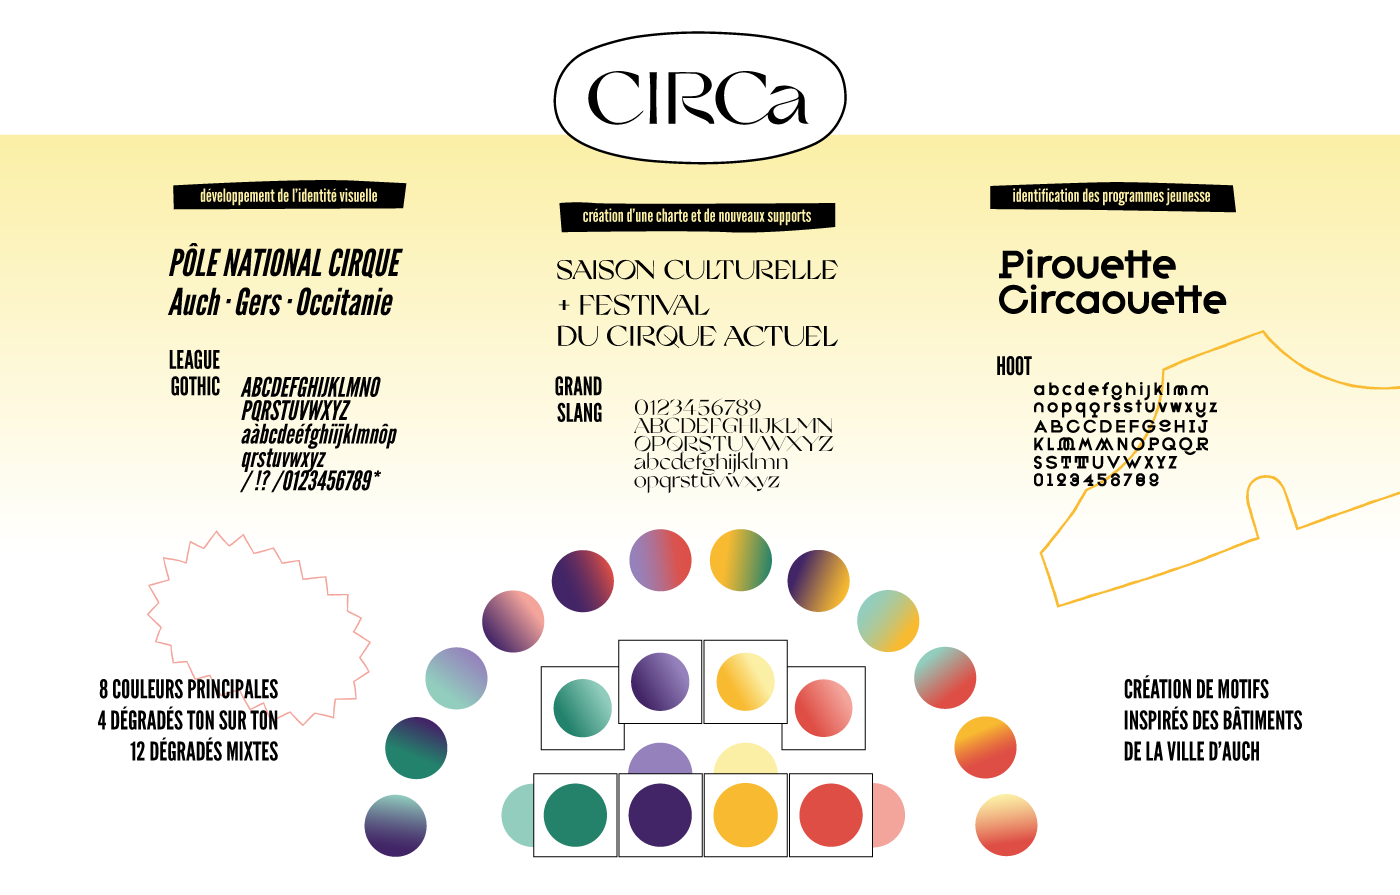 Présentation de la charte graphique proposée pour CIRCa pôle national cirque de Auch. typos League Gothic, Grand Slang et Hoot, gammes colorées et dégradés